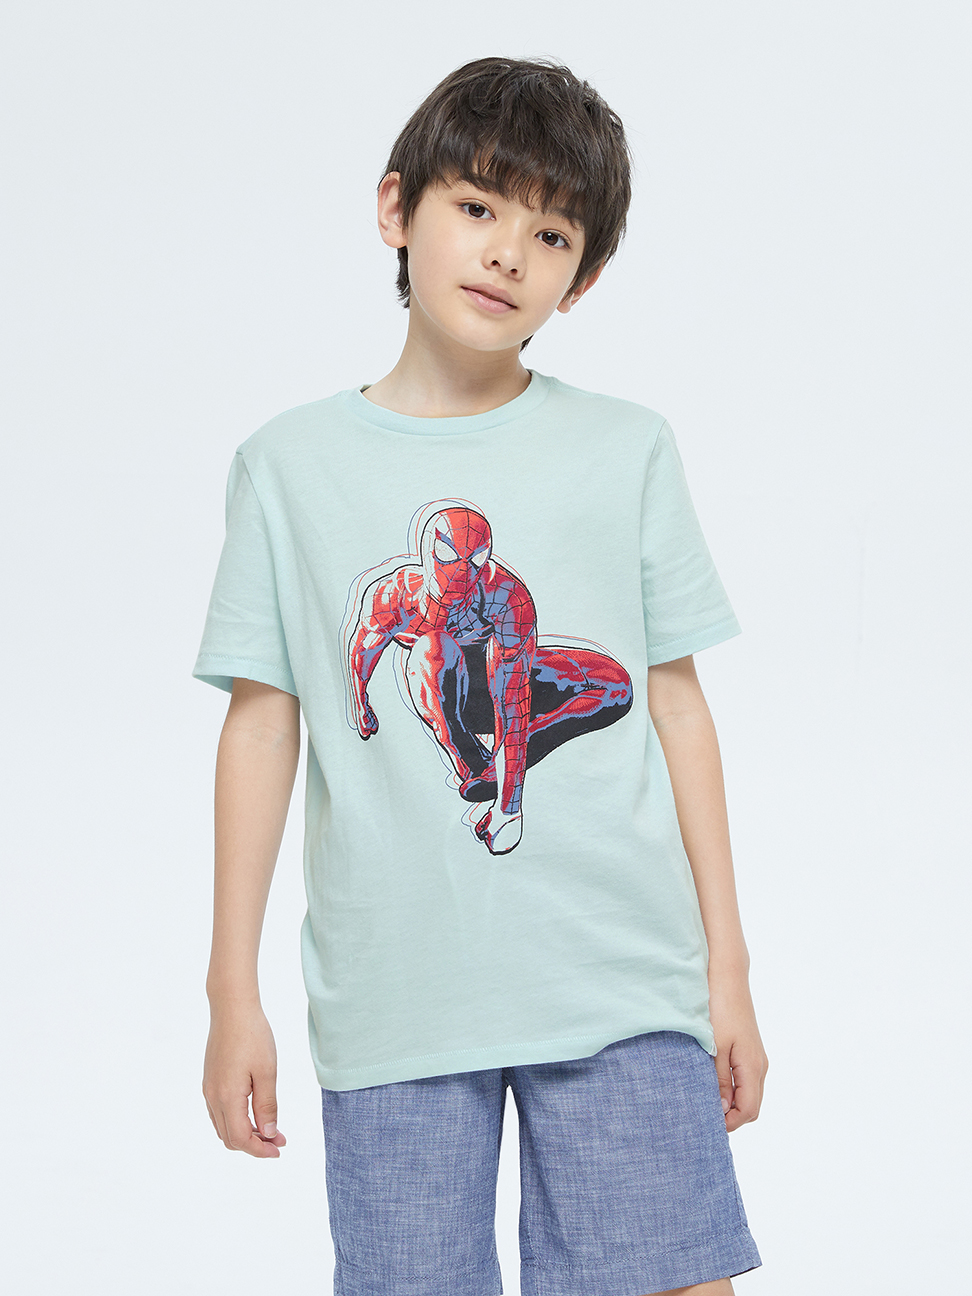 男童|Gap x Marvel漫威聯名 純棉短袖T恤-淺藍色